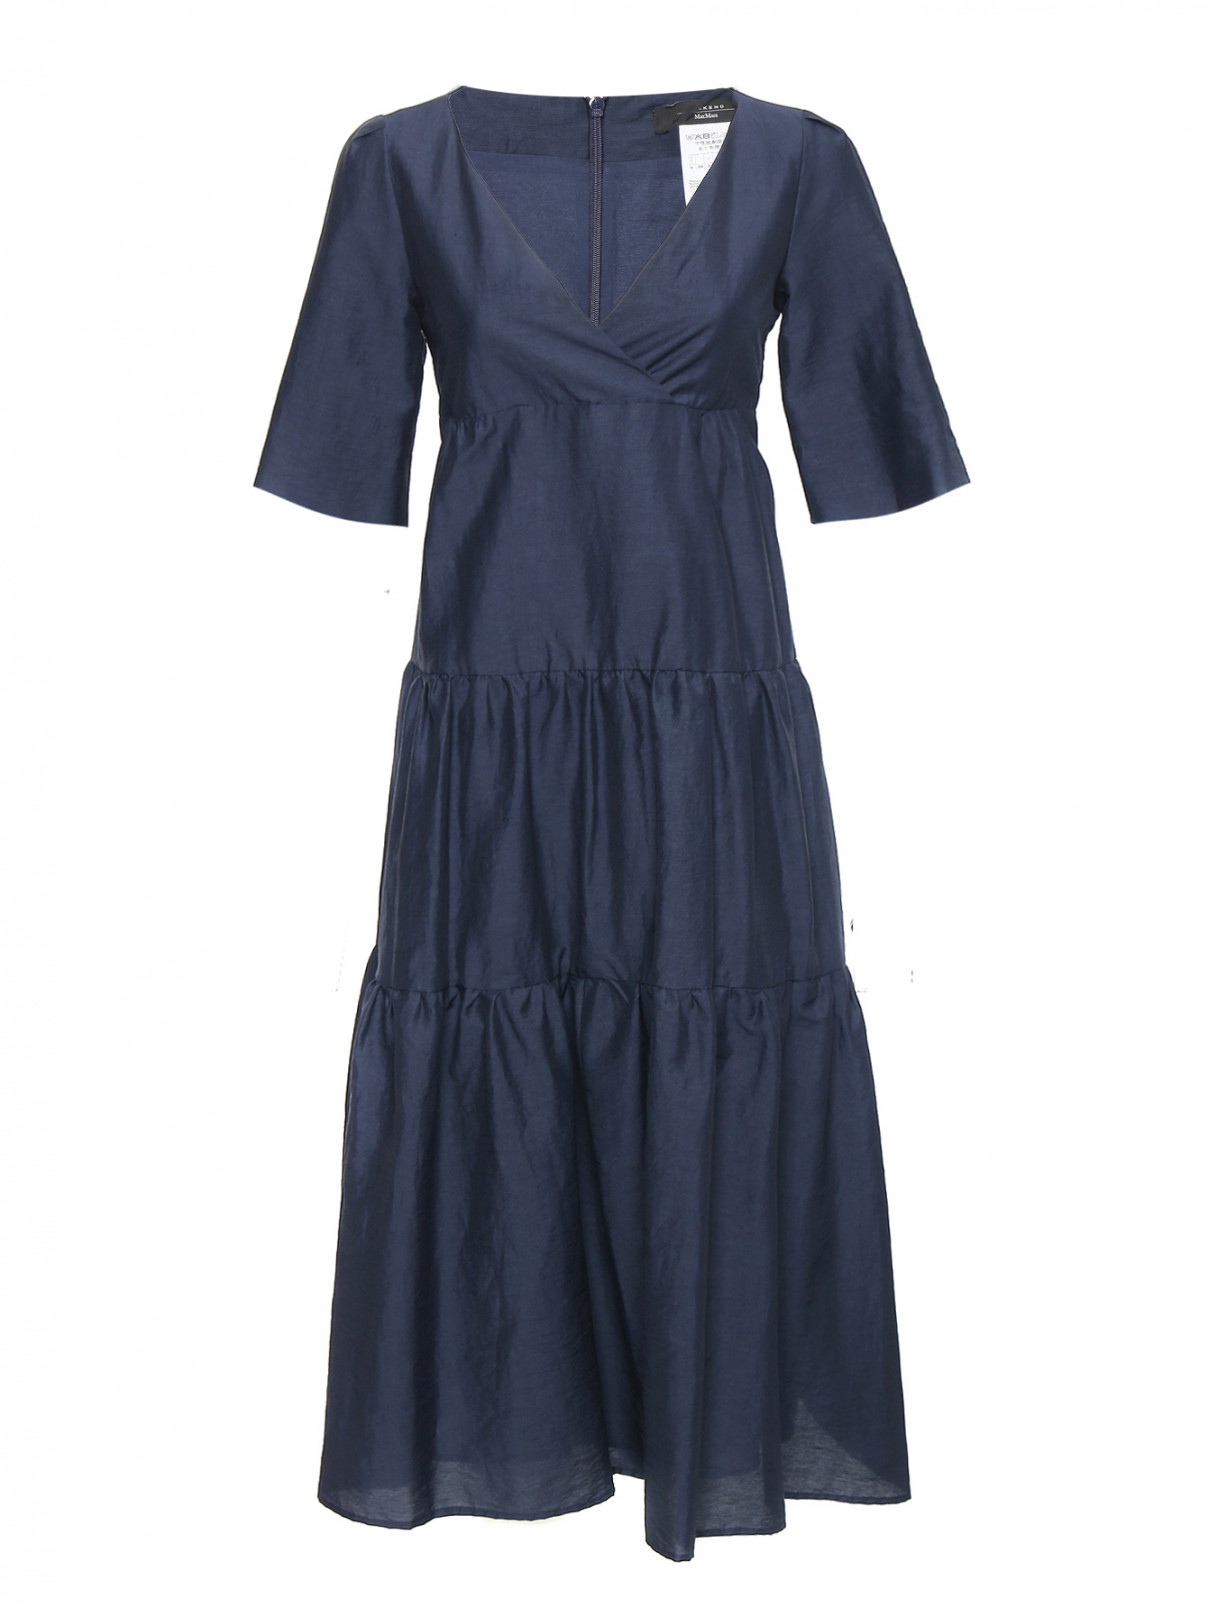 Платье из хлопка и льна с коротким рукавом Weekend Max Mara  –  Общий вид  – Цвет:  Синий